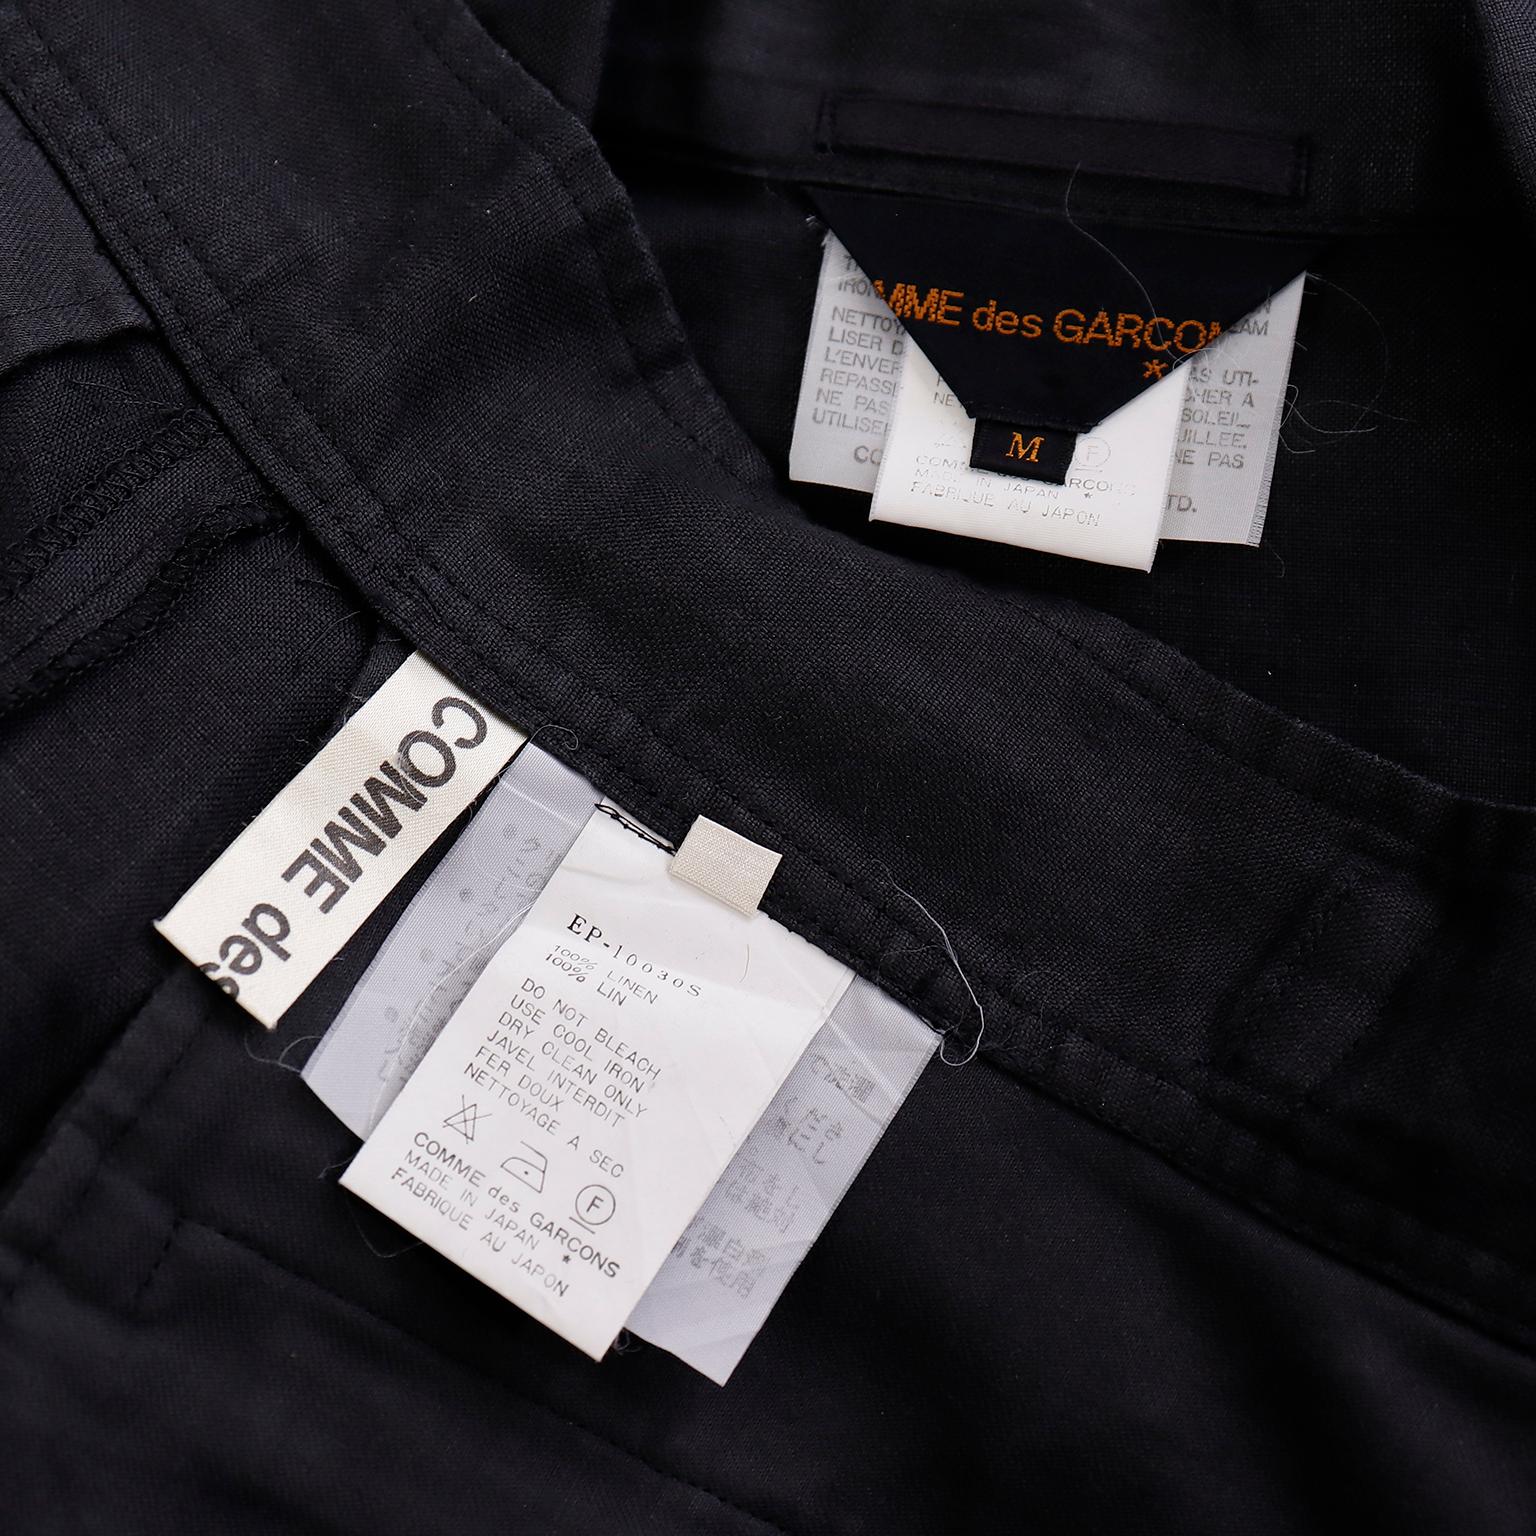 Comme des Garcons S/S 1989 Vintage Black Linen Jacket & Pants Outfit For Sale 14